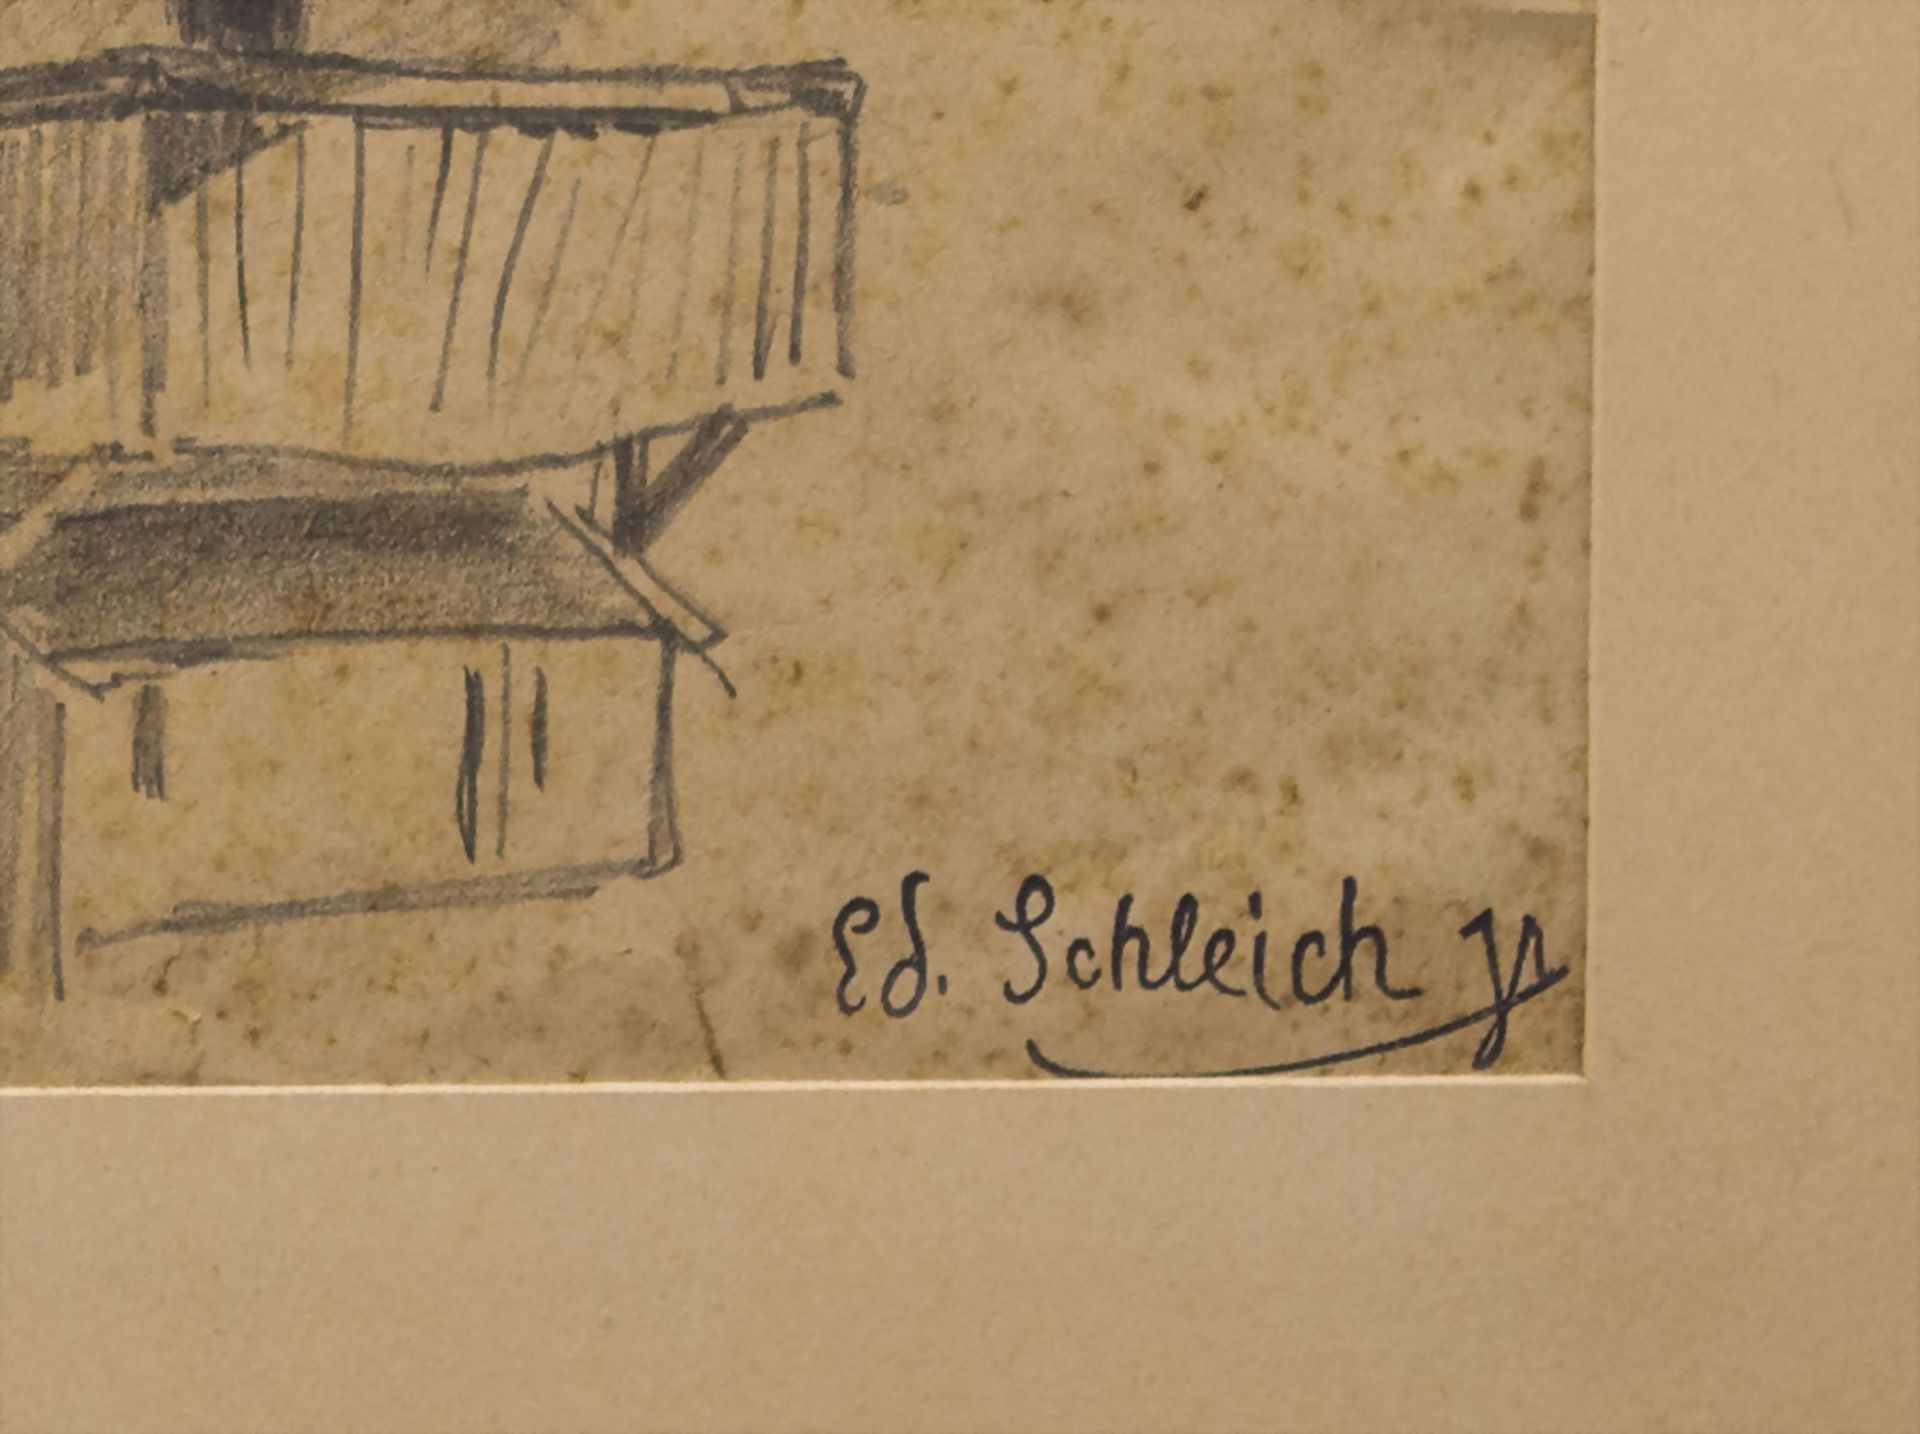 Eduard II SCHLEICH (1853-1893), 'Skizze eines Scheunengebäudes' / 'A sketch of a barn building' - Image 2 of 3